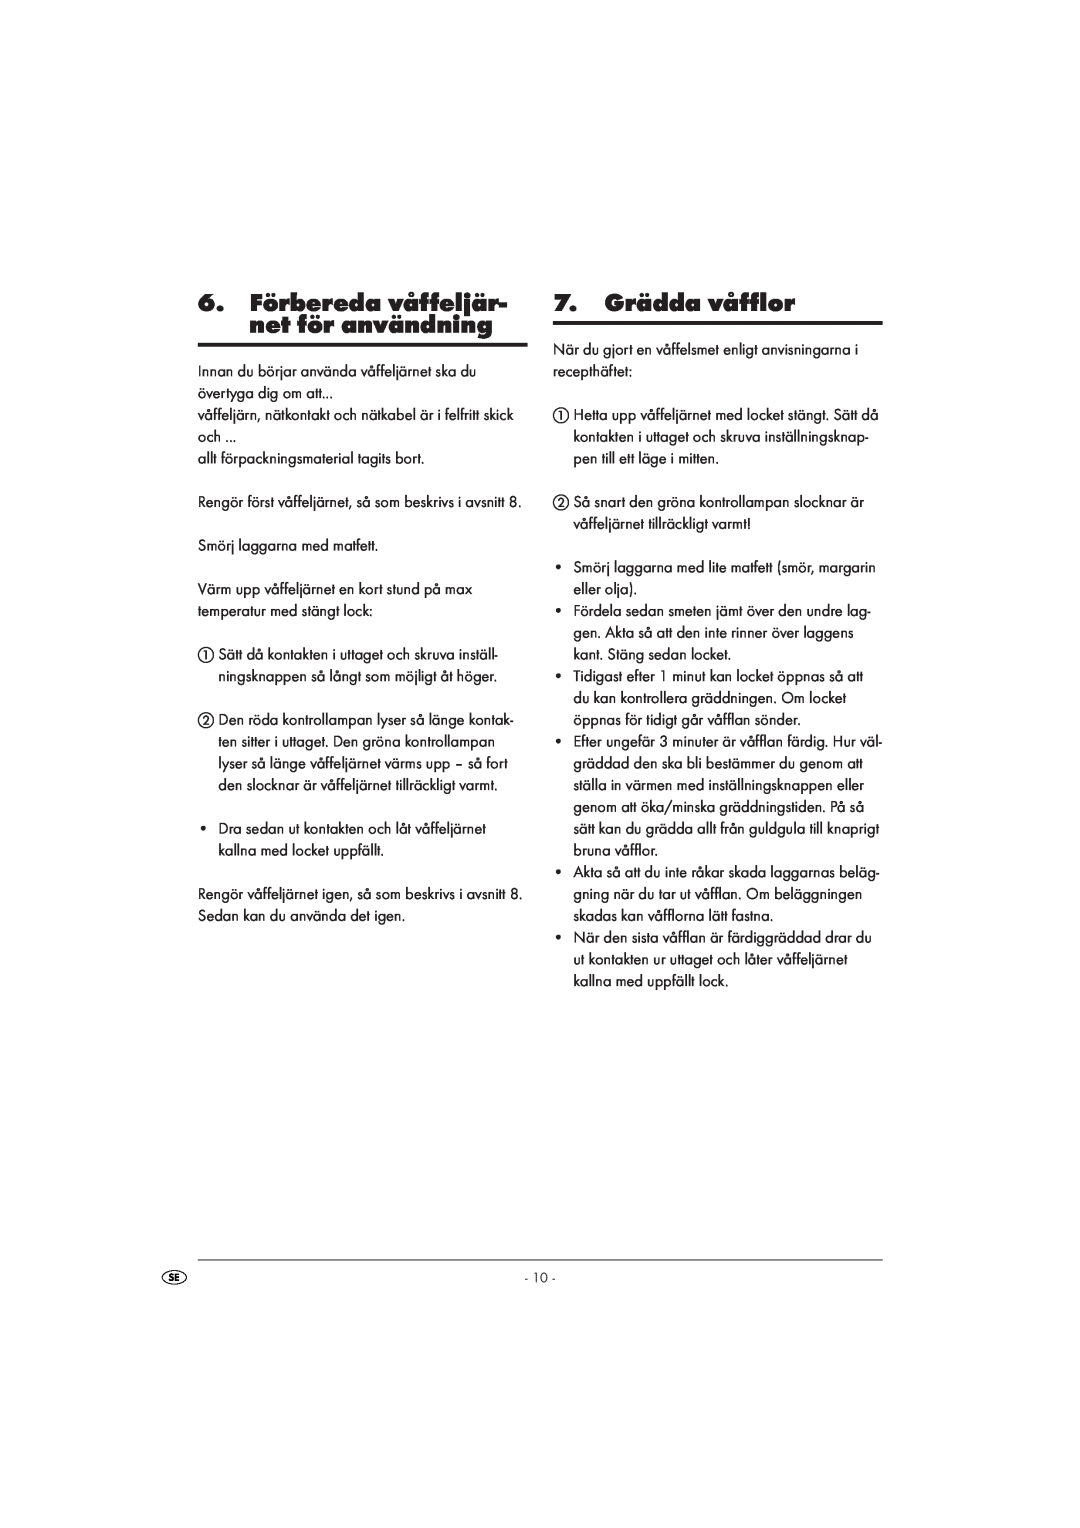 Kompernass KH 1105 manual 6.Förbereda våffeljär- net för användning, 7.Grädda våfflor 